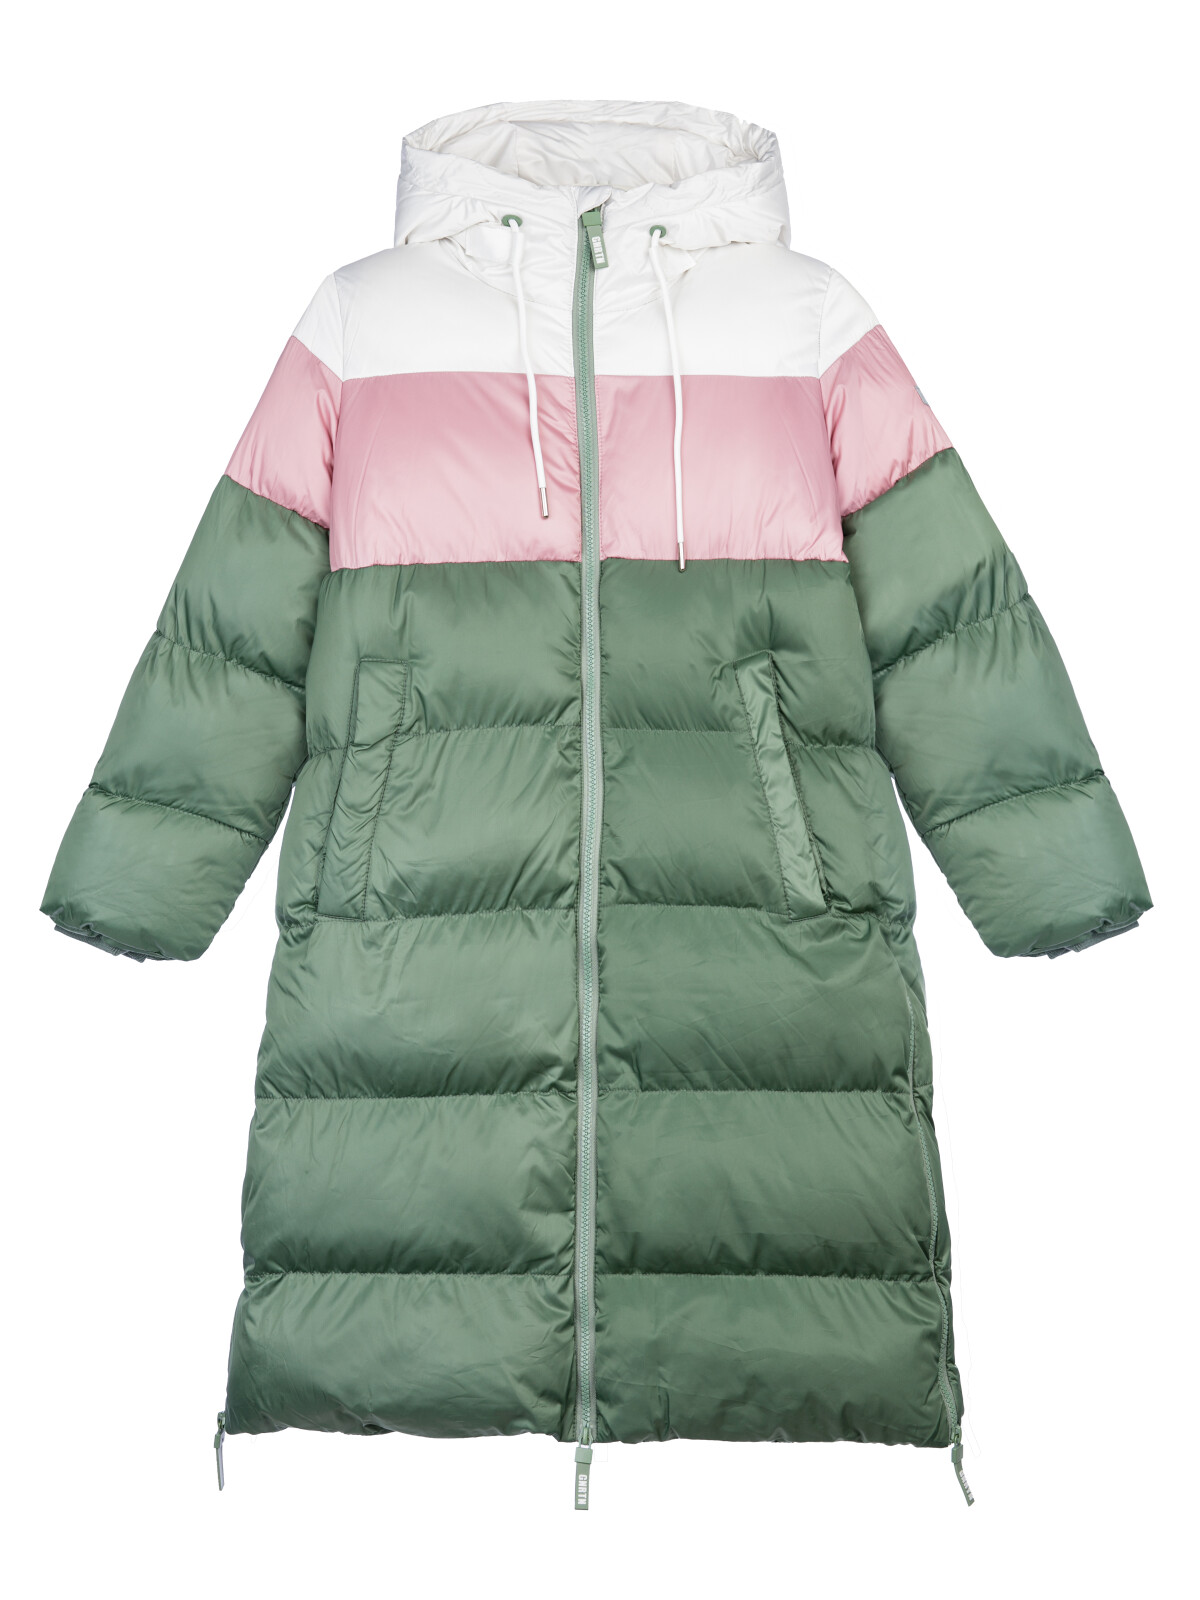 Пальто текстильное для девочек PlayToday, серебро,коричневый,темно-зеленый, 140